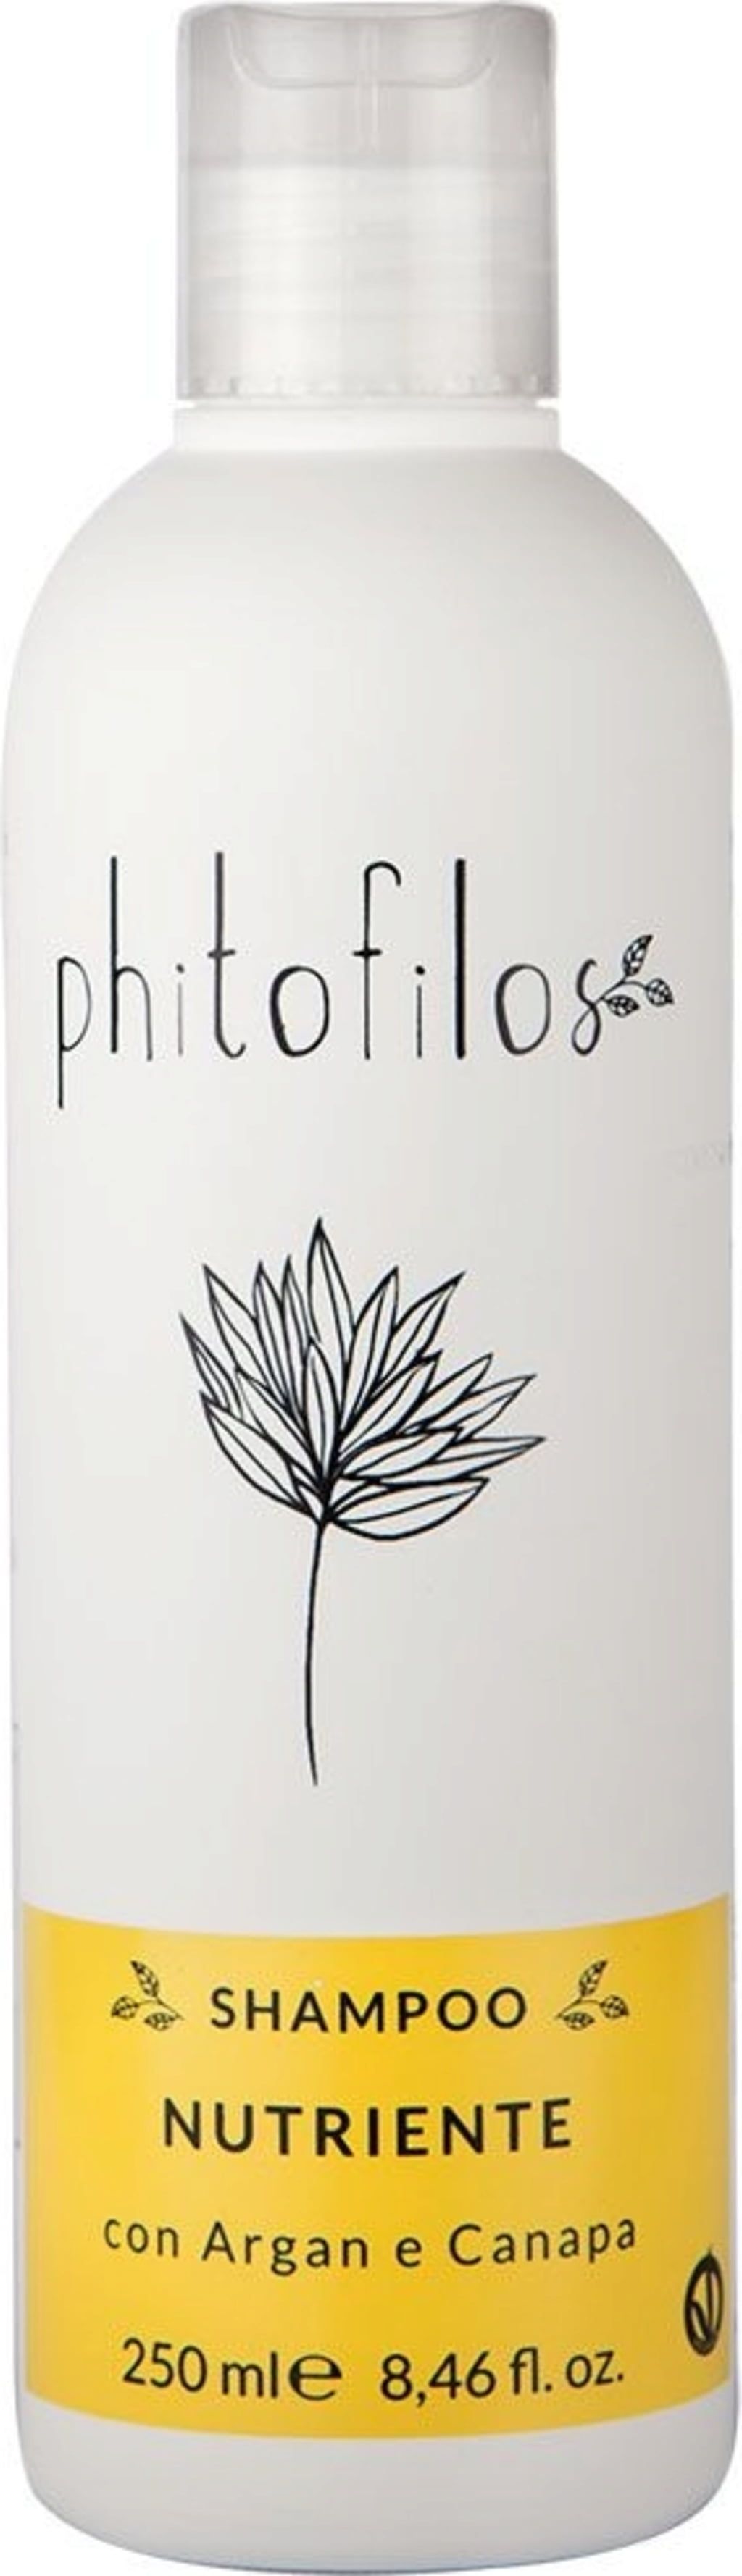 Phitofilos Shampoo Nutriente - 250 ml